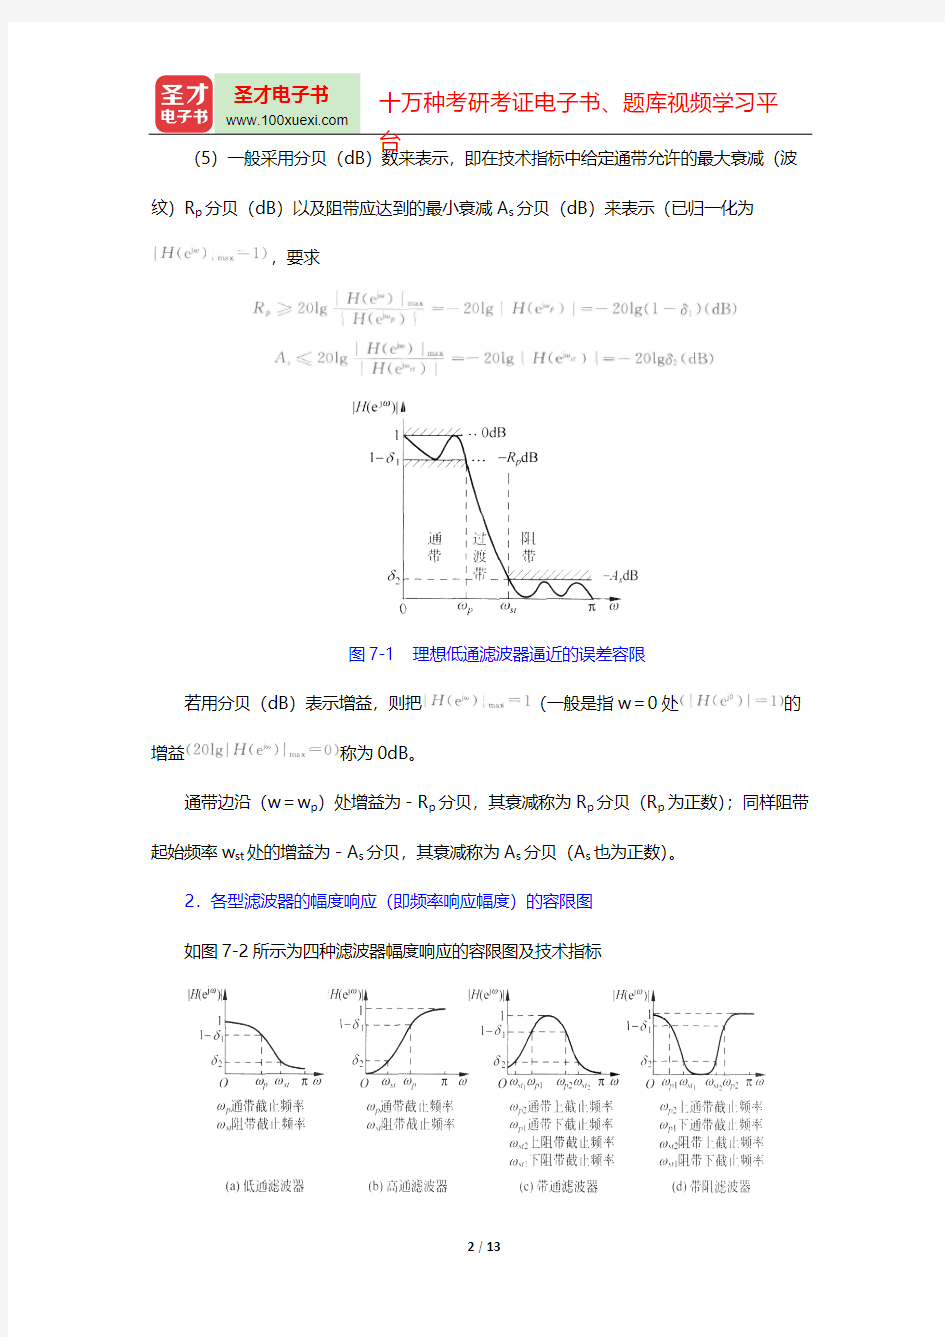 程佩青《数字信号处理教程》(第4版)(复习笔记 无限长单位冲激响应(IIR))